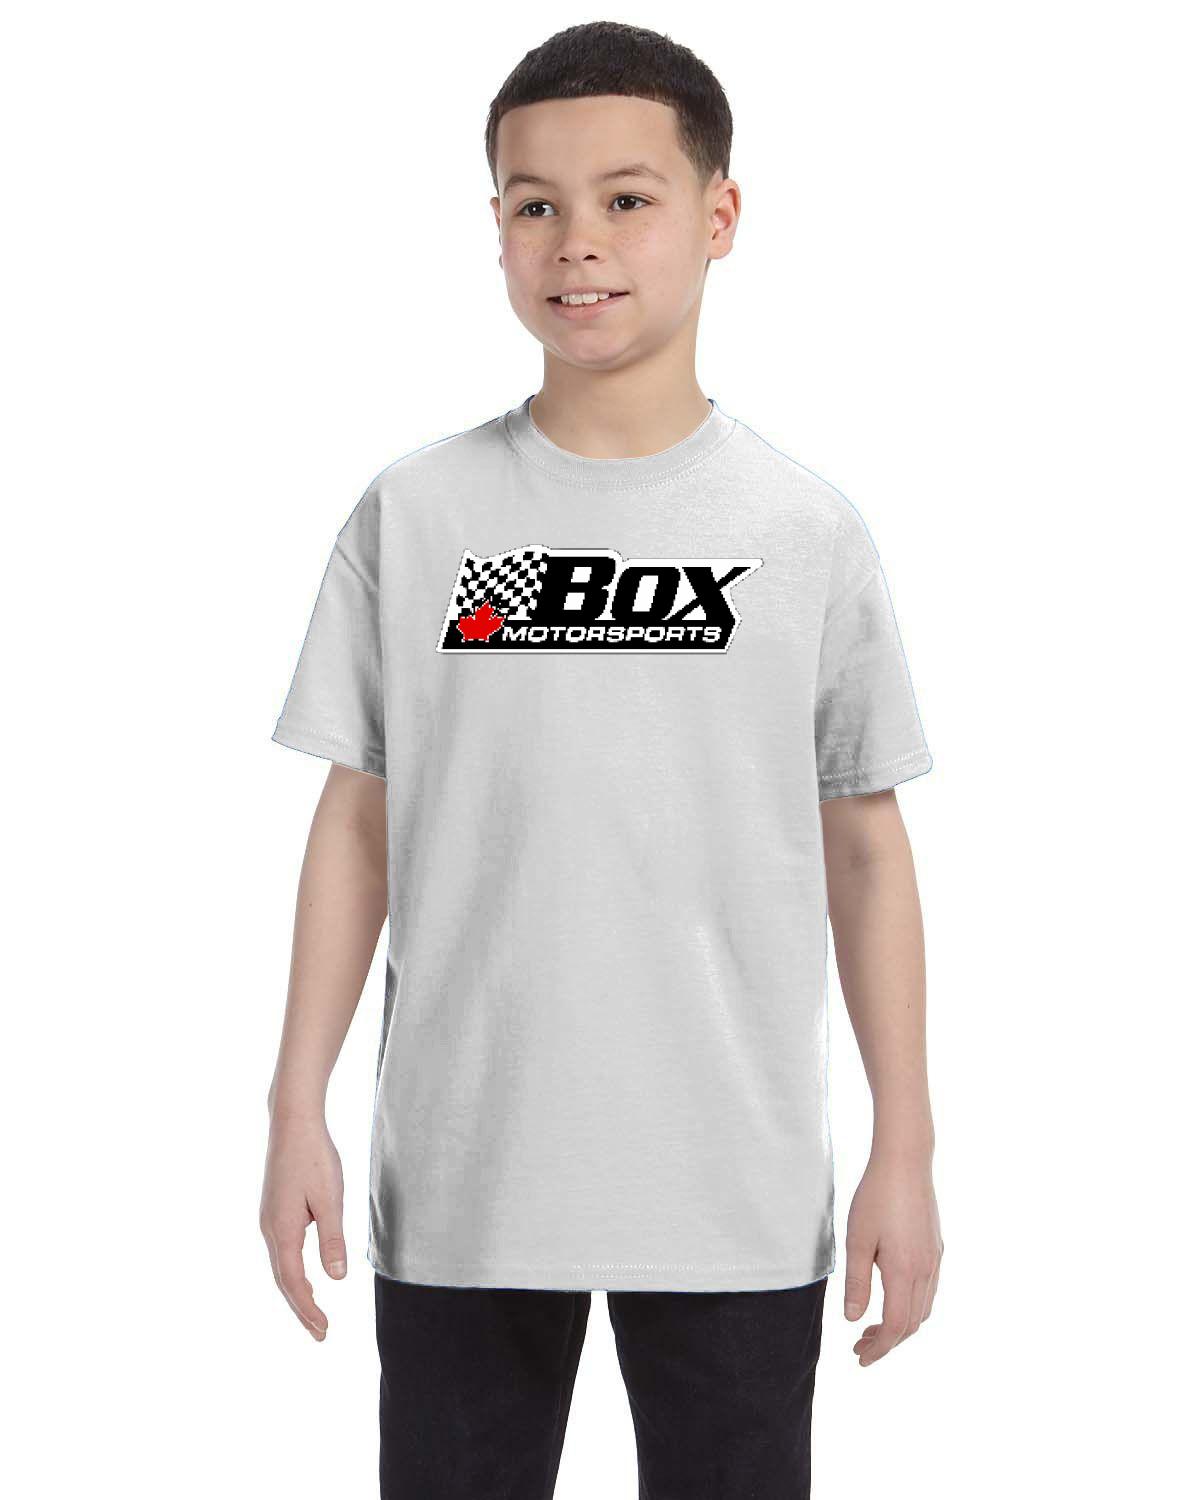 Box Motorsports Kid's T-Shirt